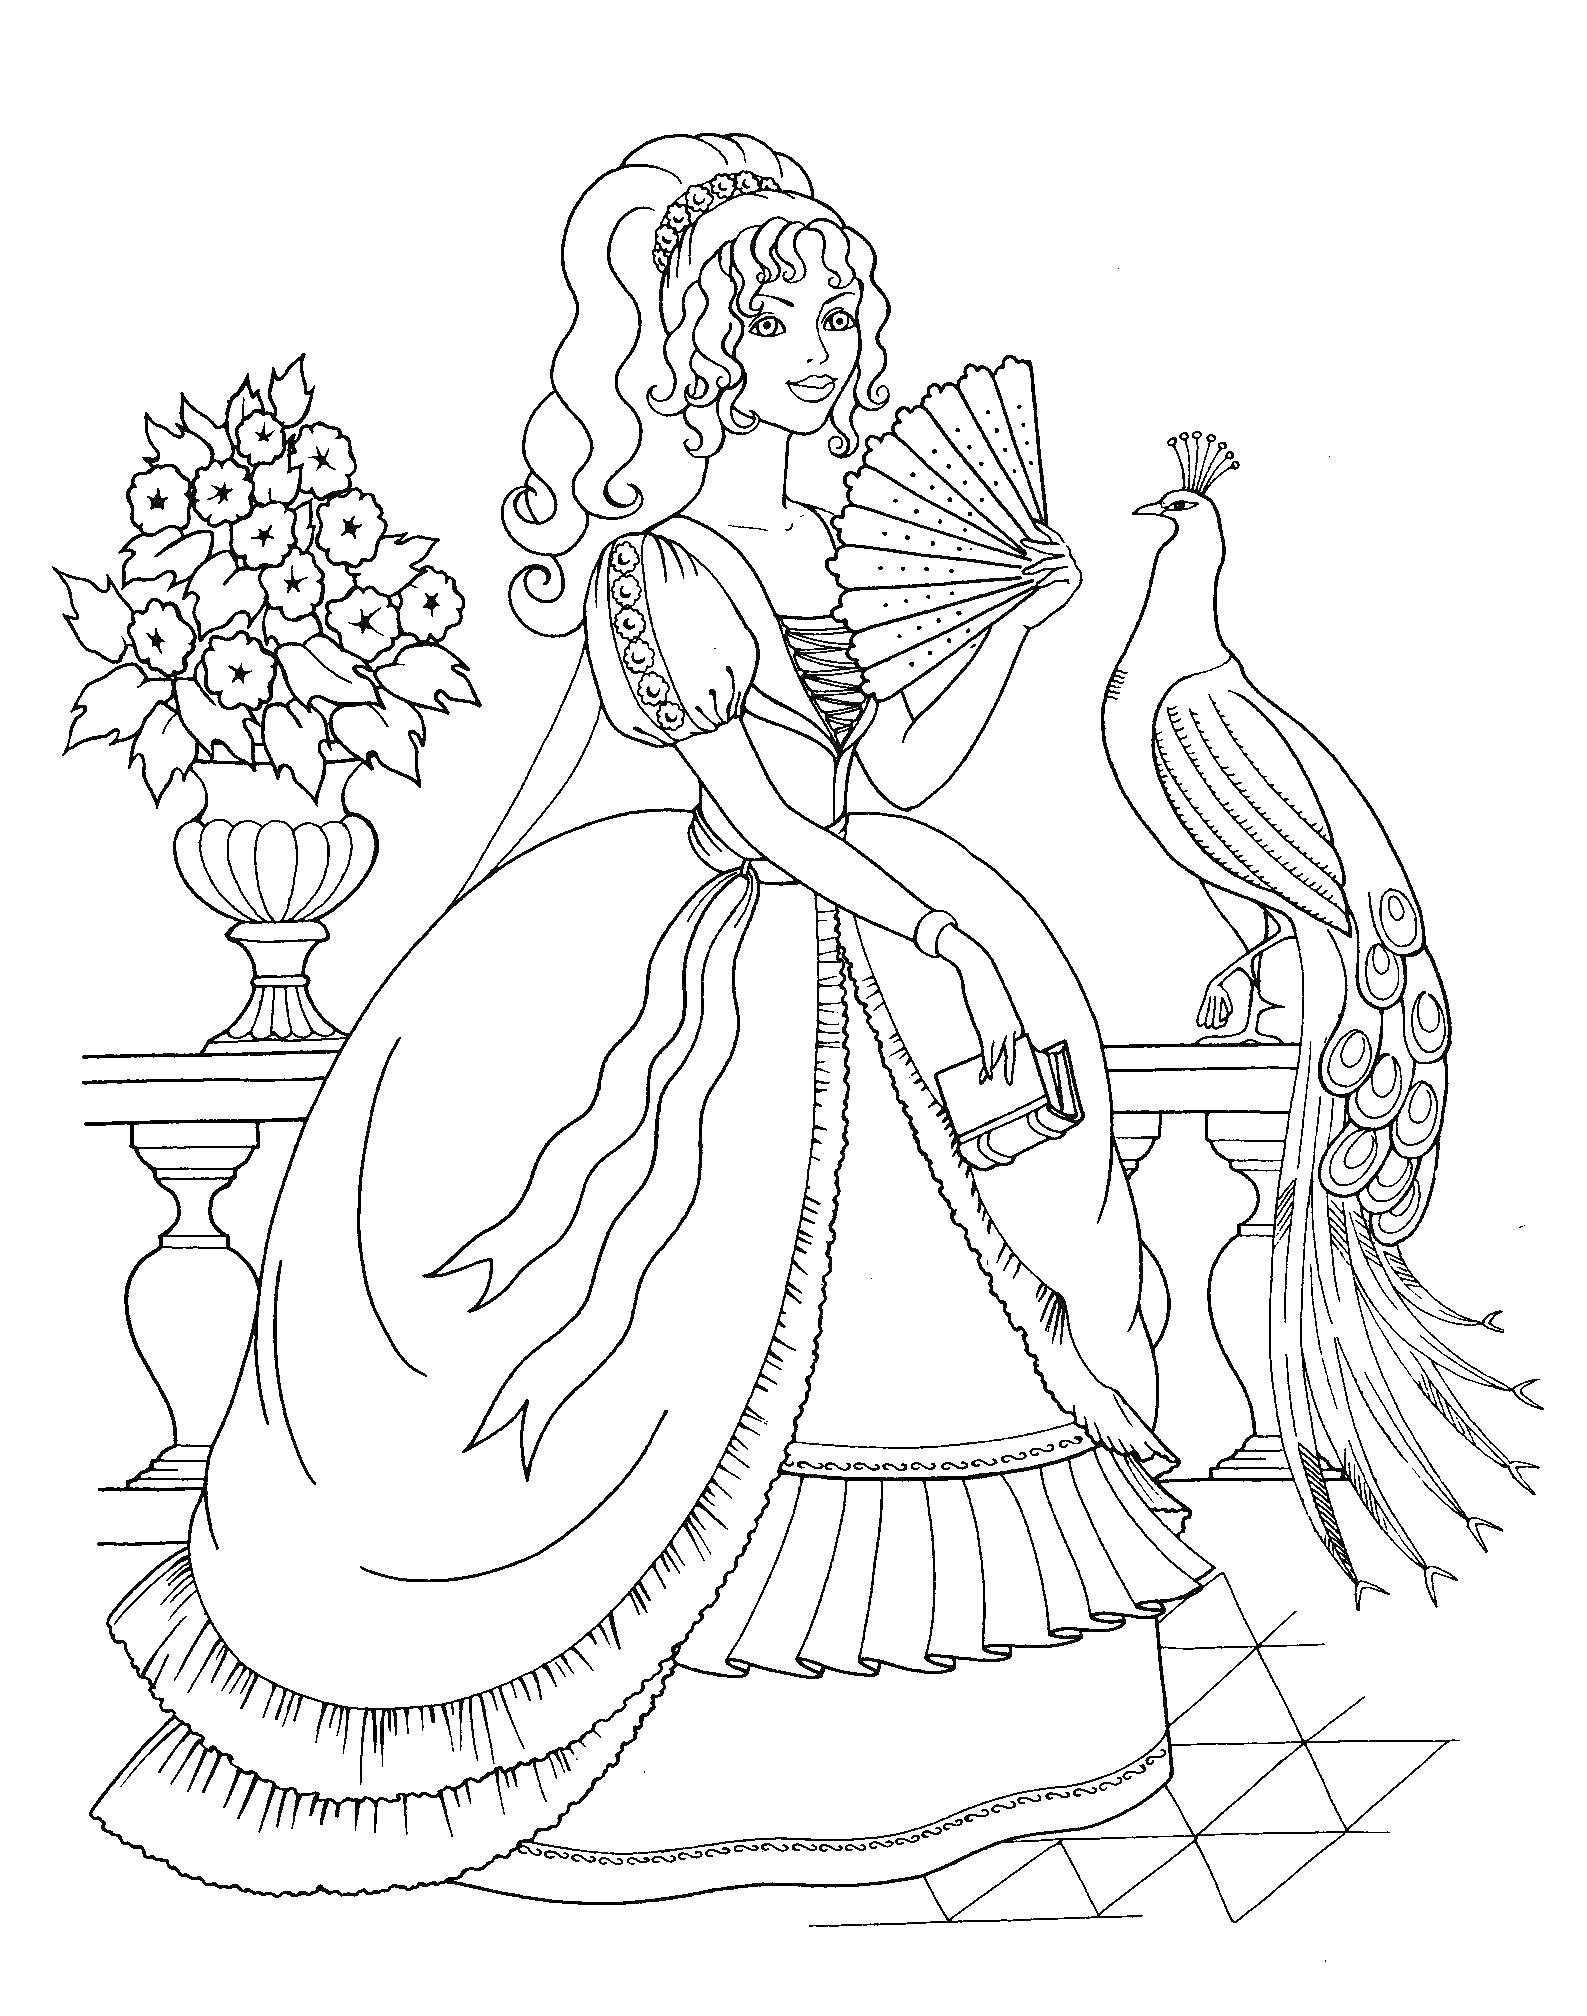 Раскраска Принцесса с веером и павлином возле цветочной вазы